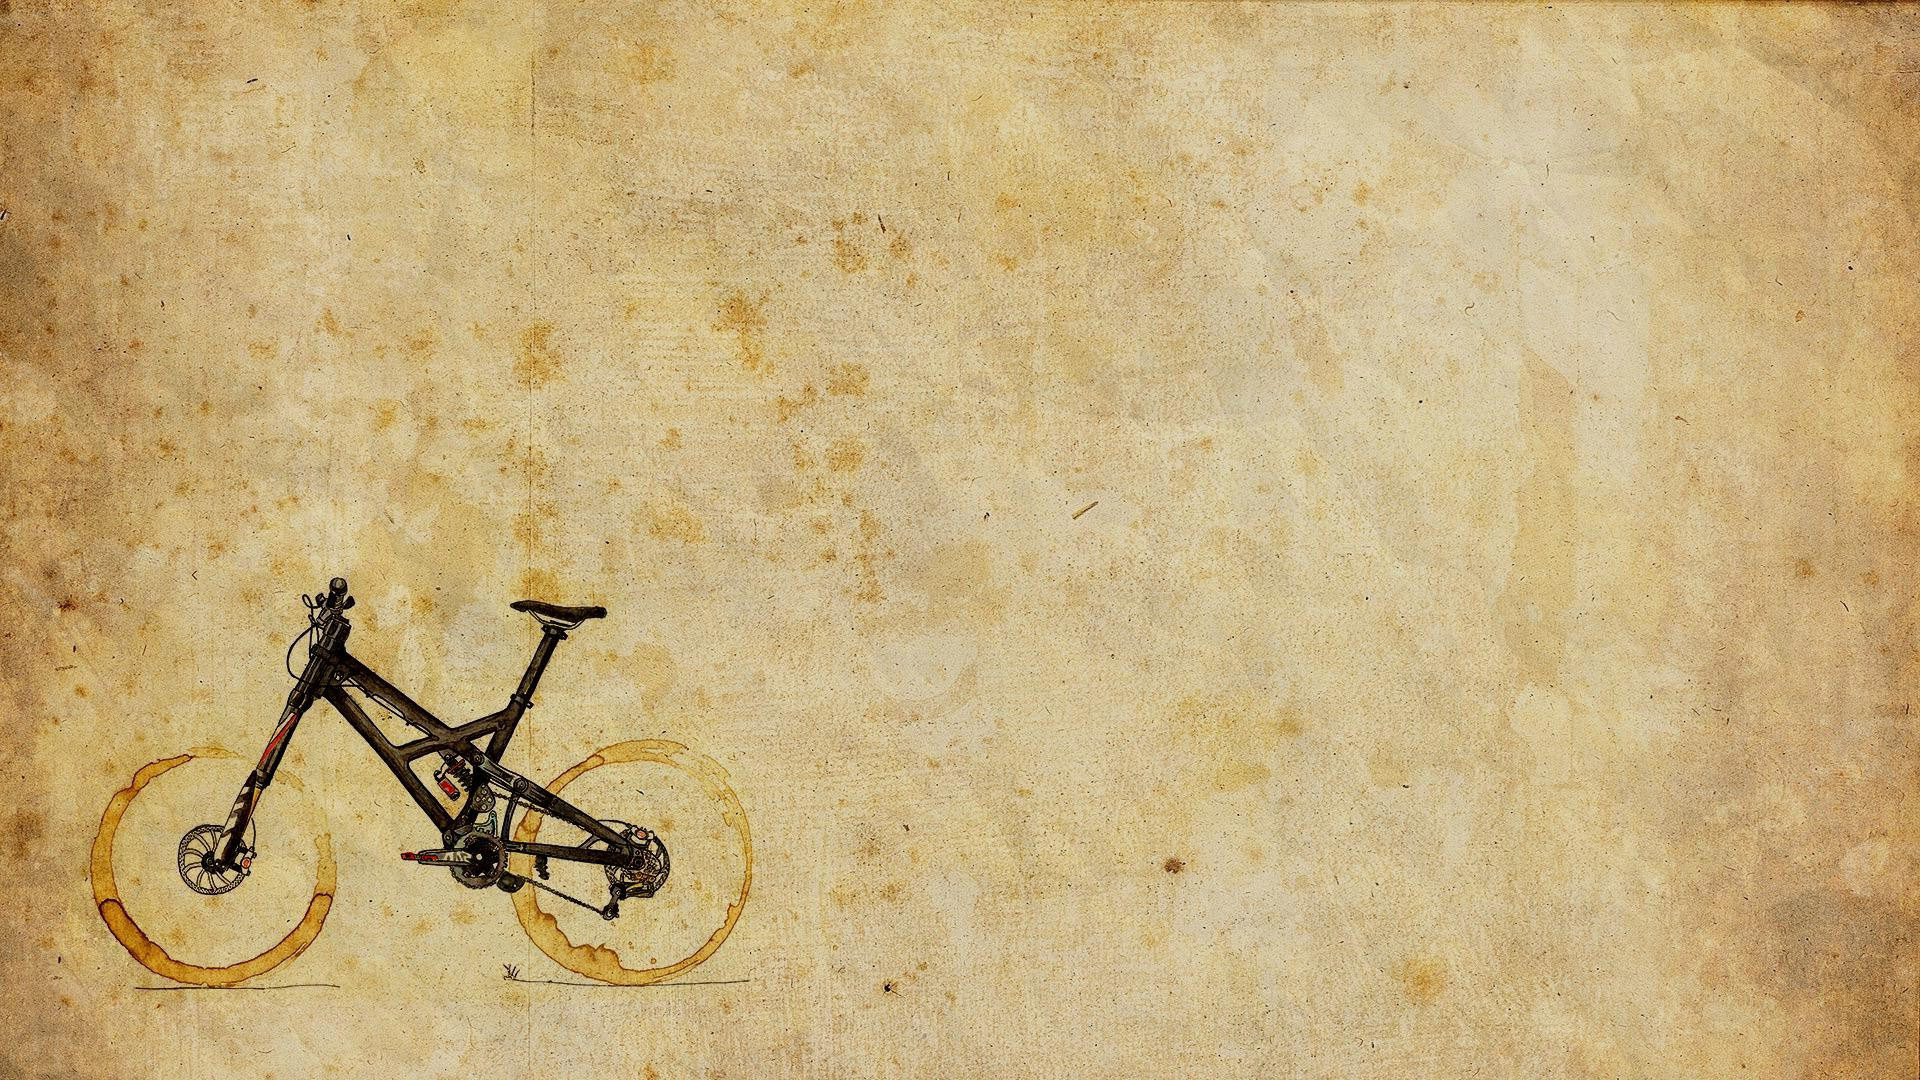 Coffee Stain Bike Wallpaper